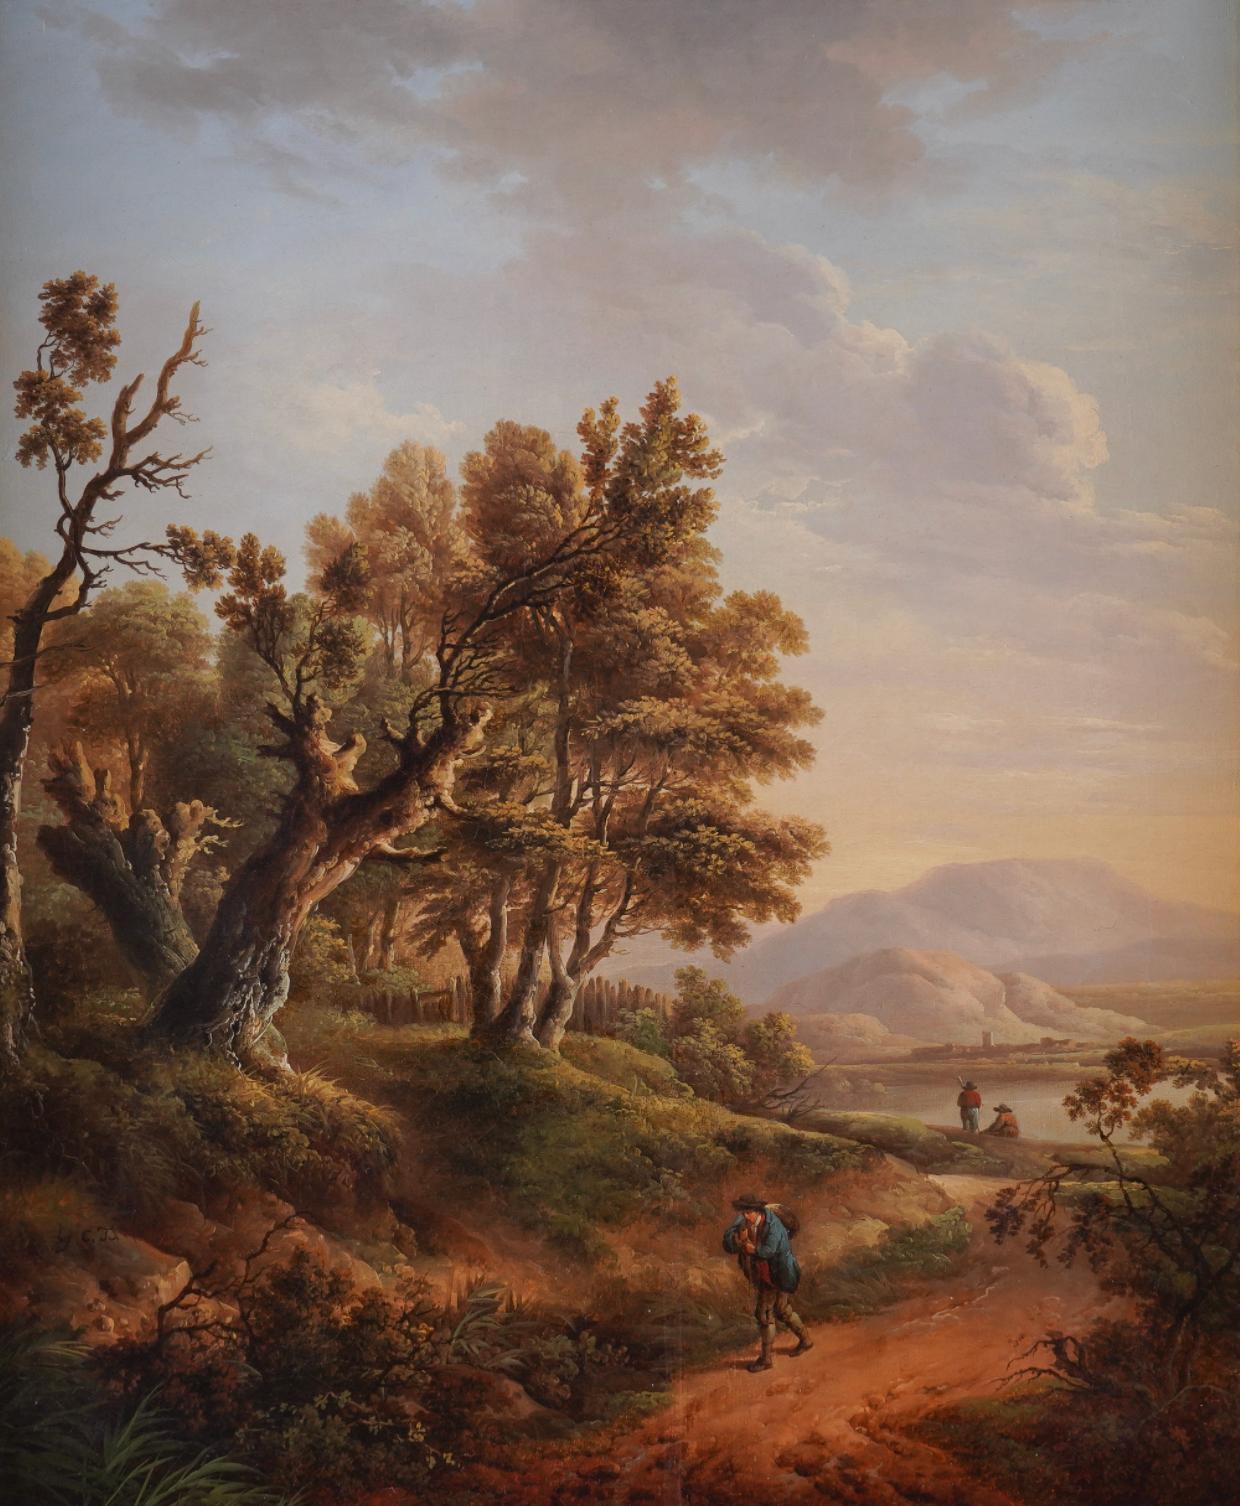 Un paysage boisé avec un voyageur sur un chemin - Painting de Charles Towne